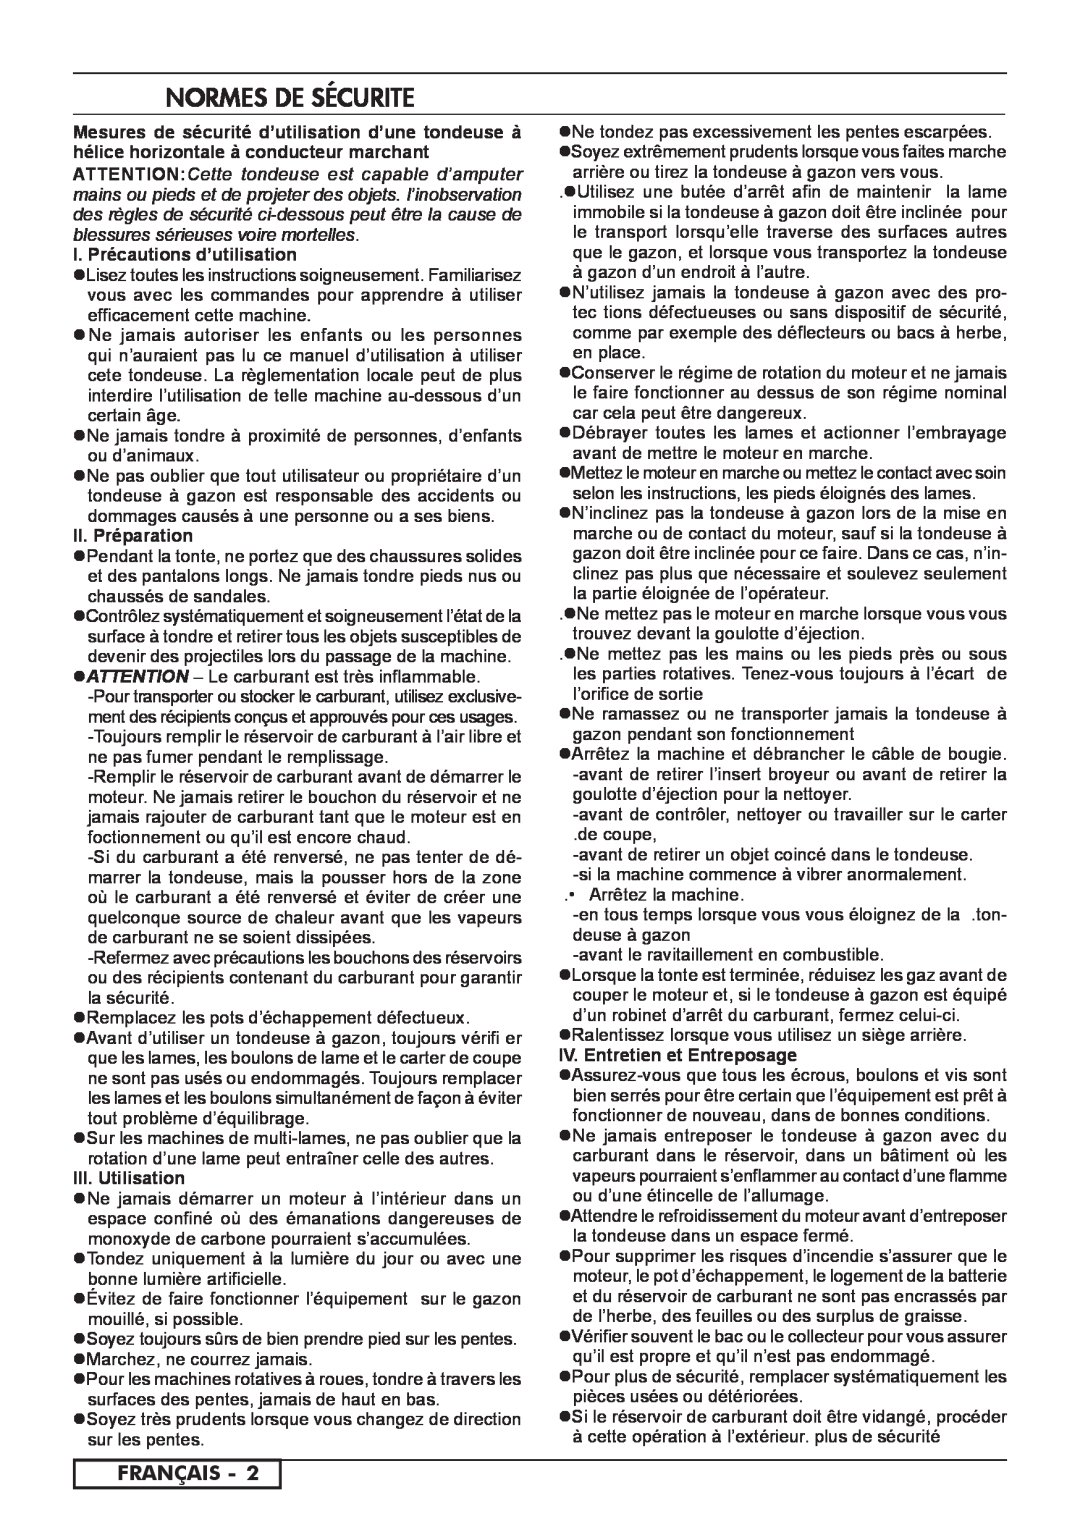 Husqvarna 966560701 Normes De Sécurite, Français, I. Précautions d’utilisation, II. Préparation, III. Utilisation 